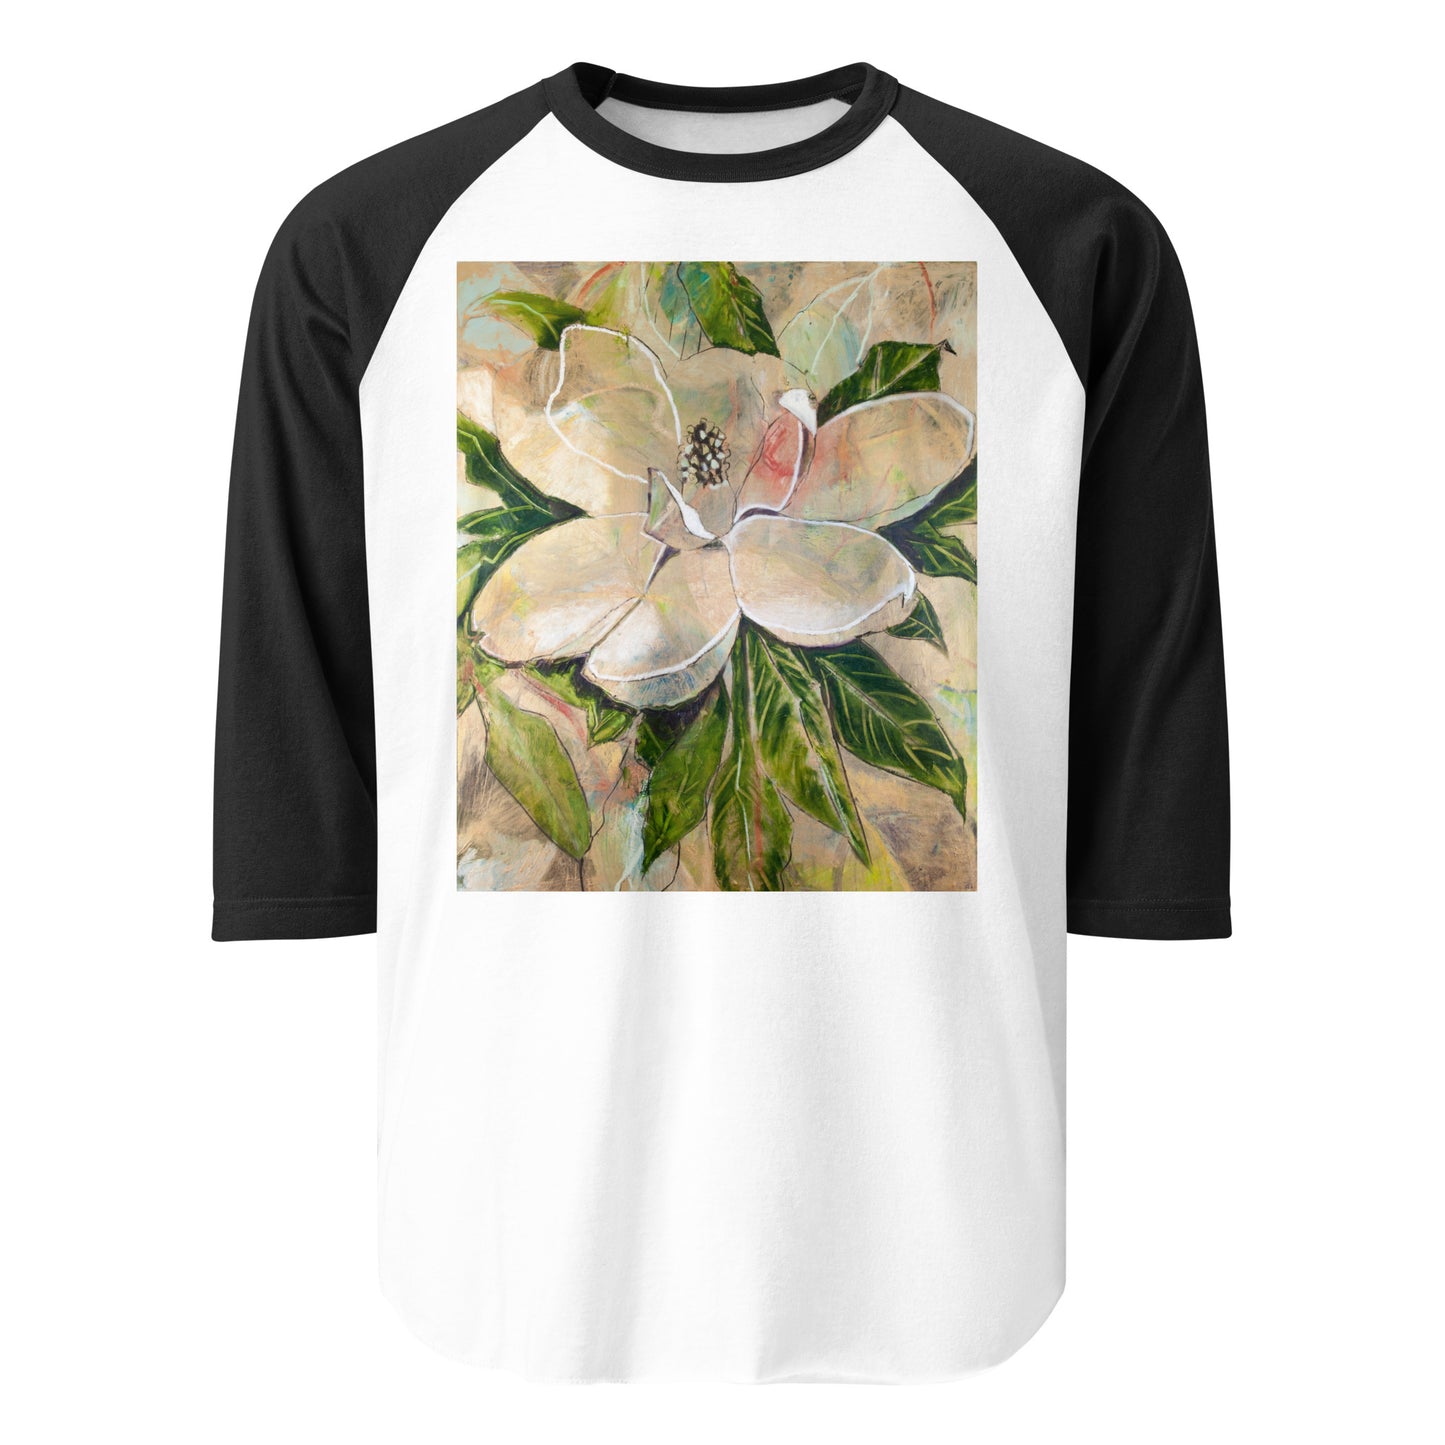 Steel Magnolia 3/4 sleeve raglan shirt